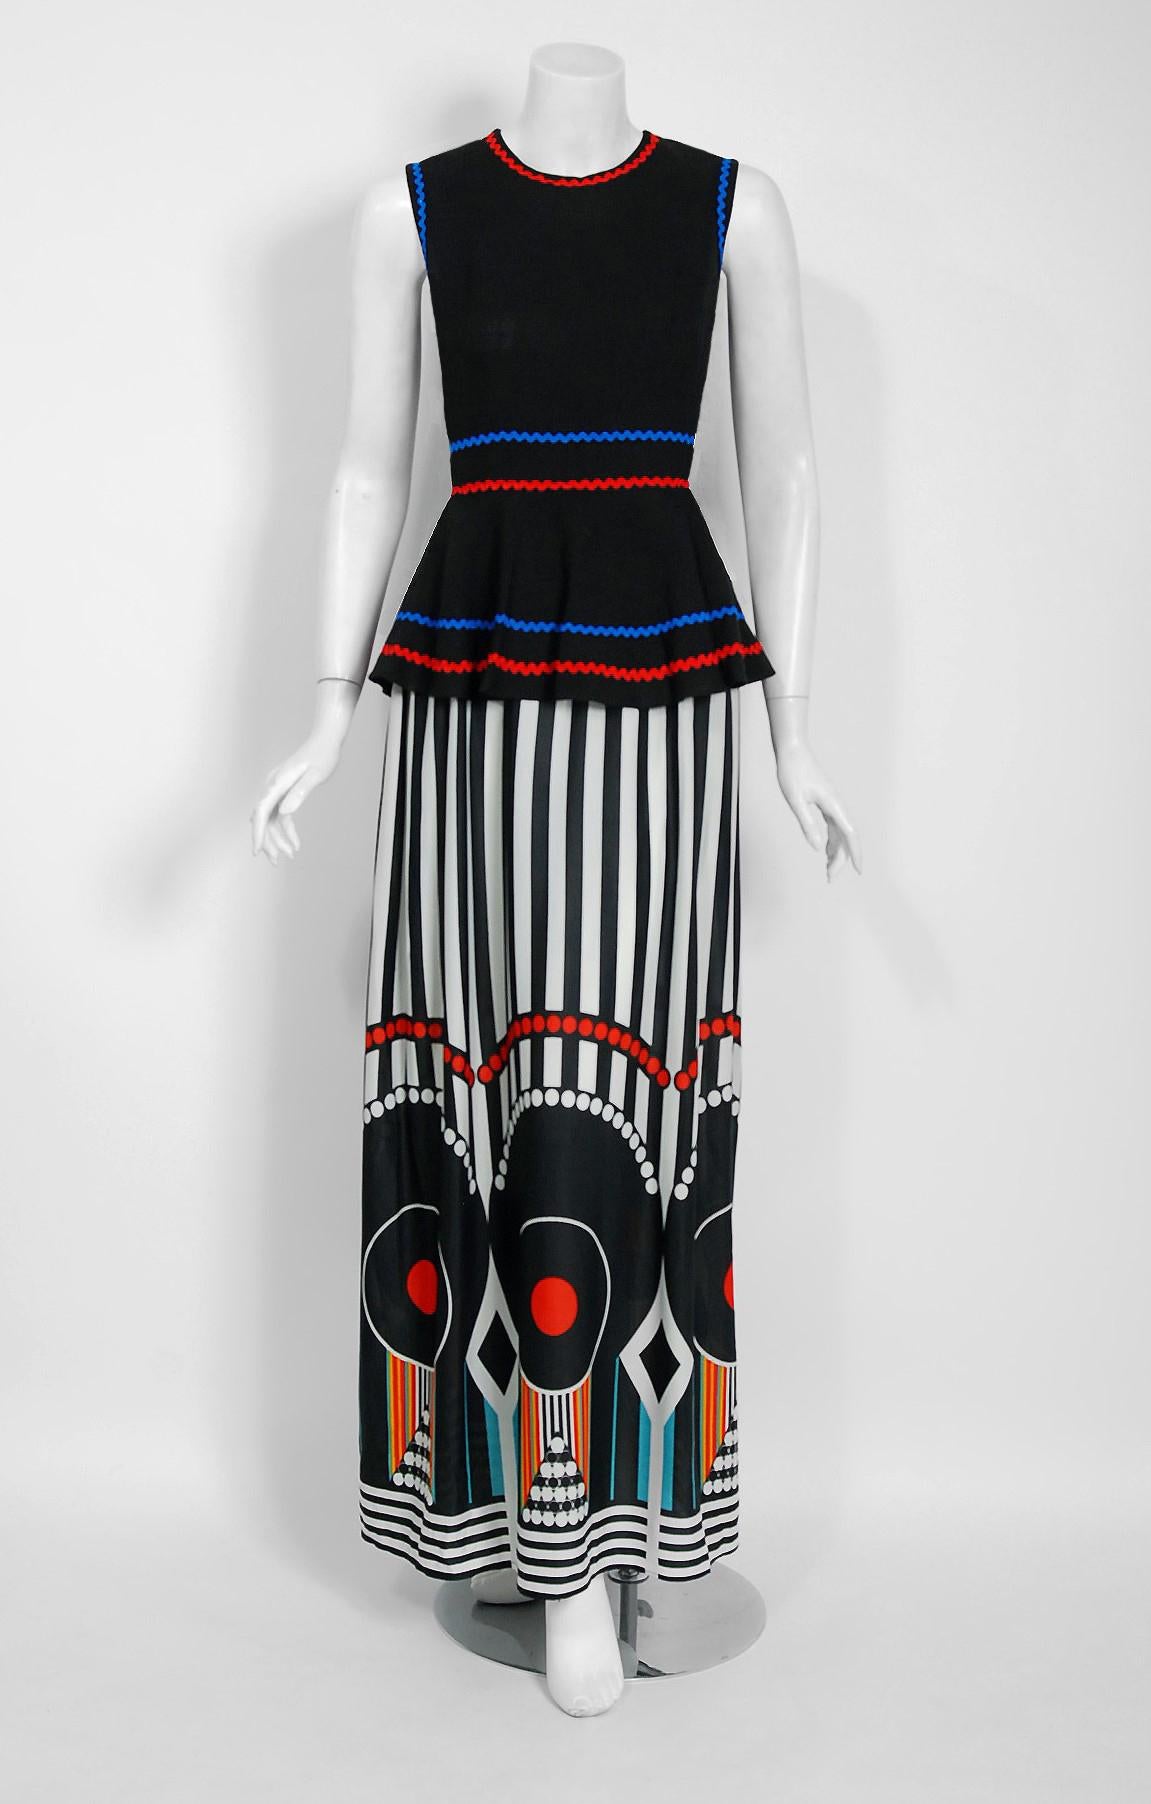 Époustouflante robe en jersey de lin noir et d'imprimés op-art colorés, documentée de 1970, de la célèbre marque Jean Varon. John Bates a créé le label Jean Varon en 1960 et est probablement l'un des plus grands talents oubliés de cette époque. Sans